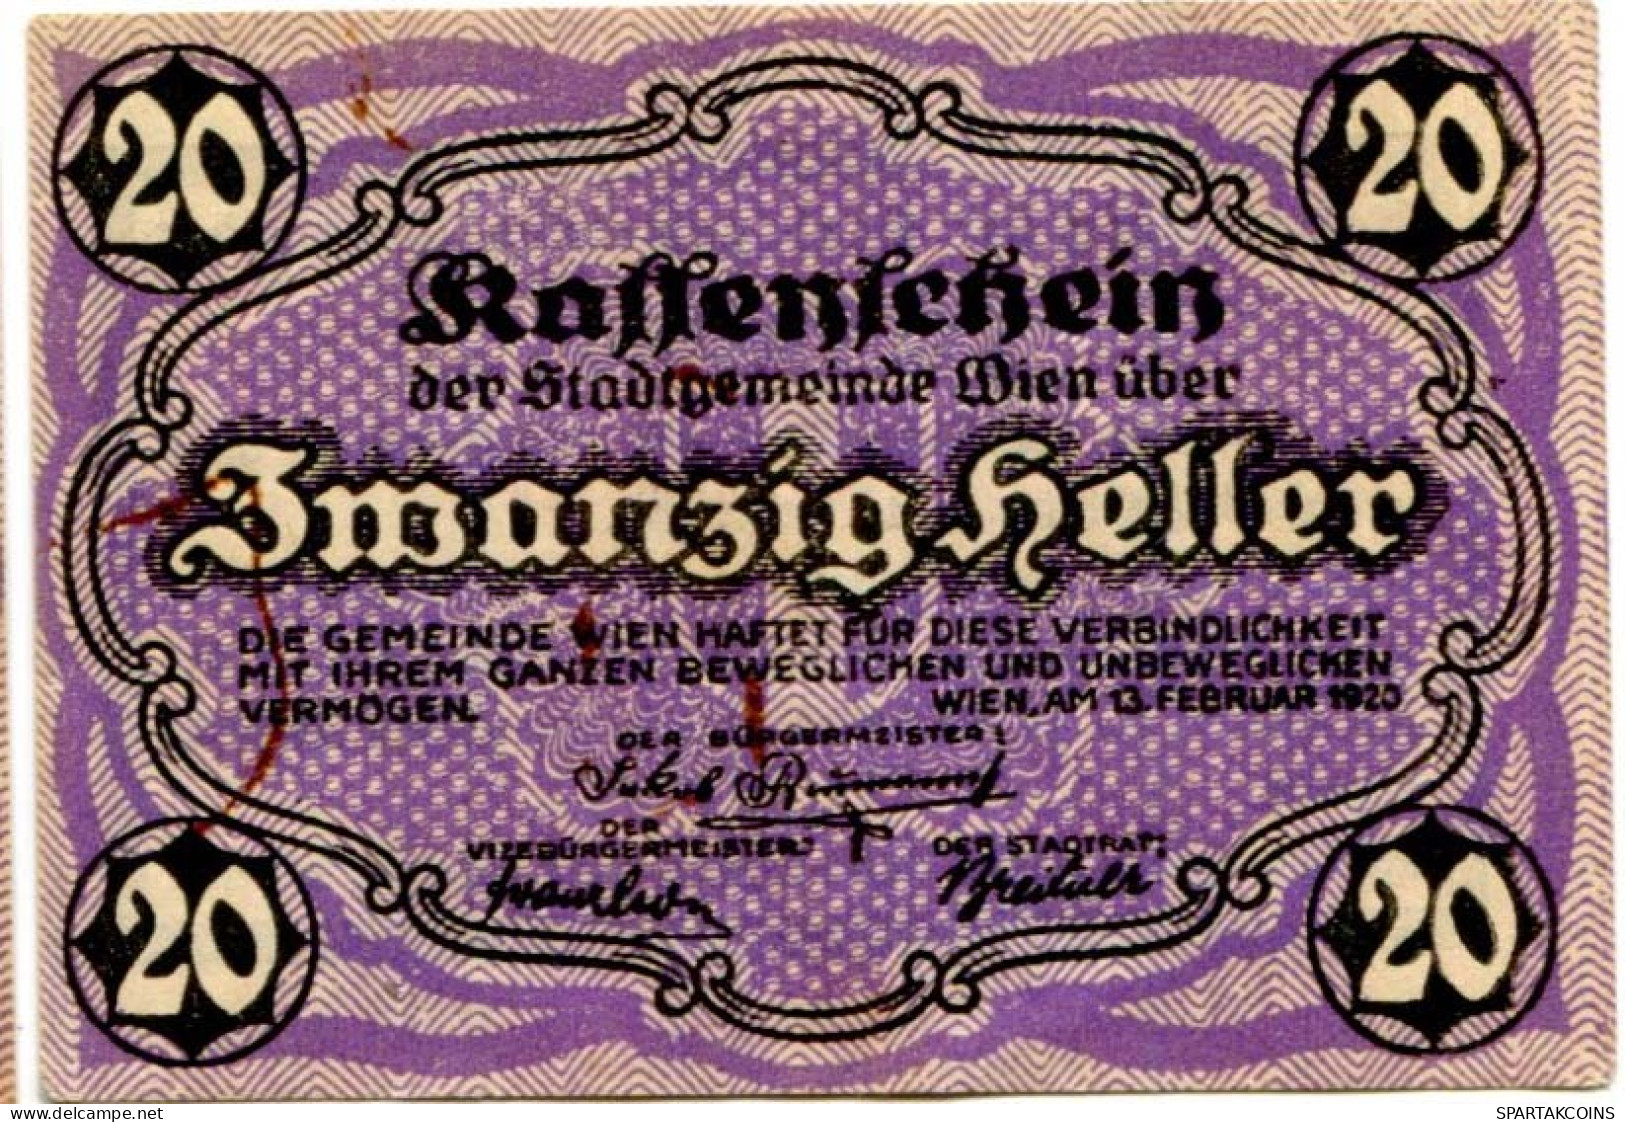 20 HELLER 1920 Stadt Wien Österreich Notgeld Papiergeld Banknote #PL571 - [11] Local Banknote Issues